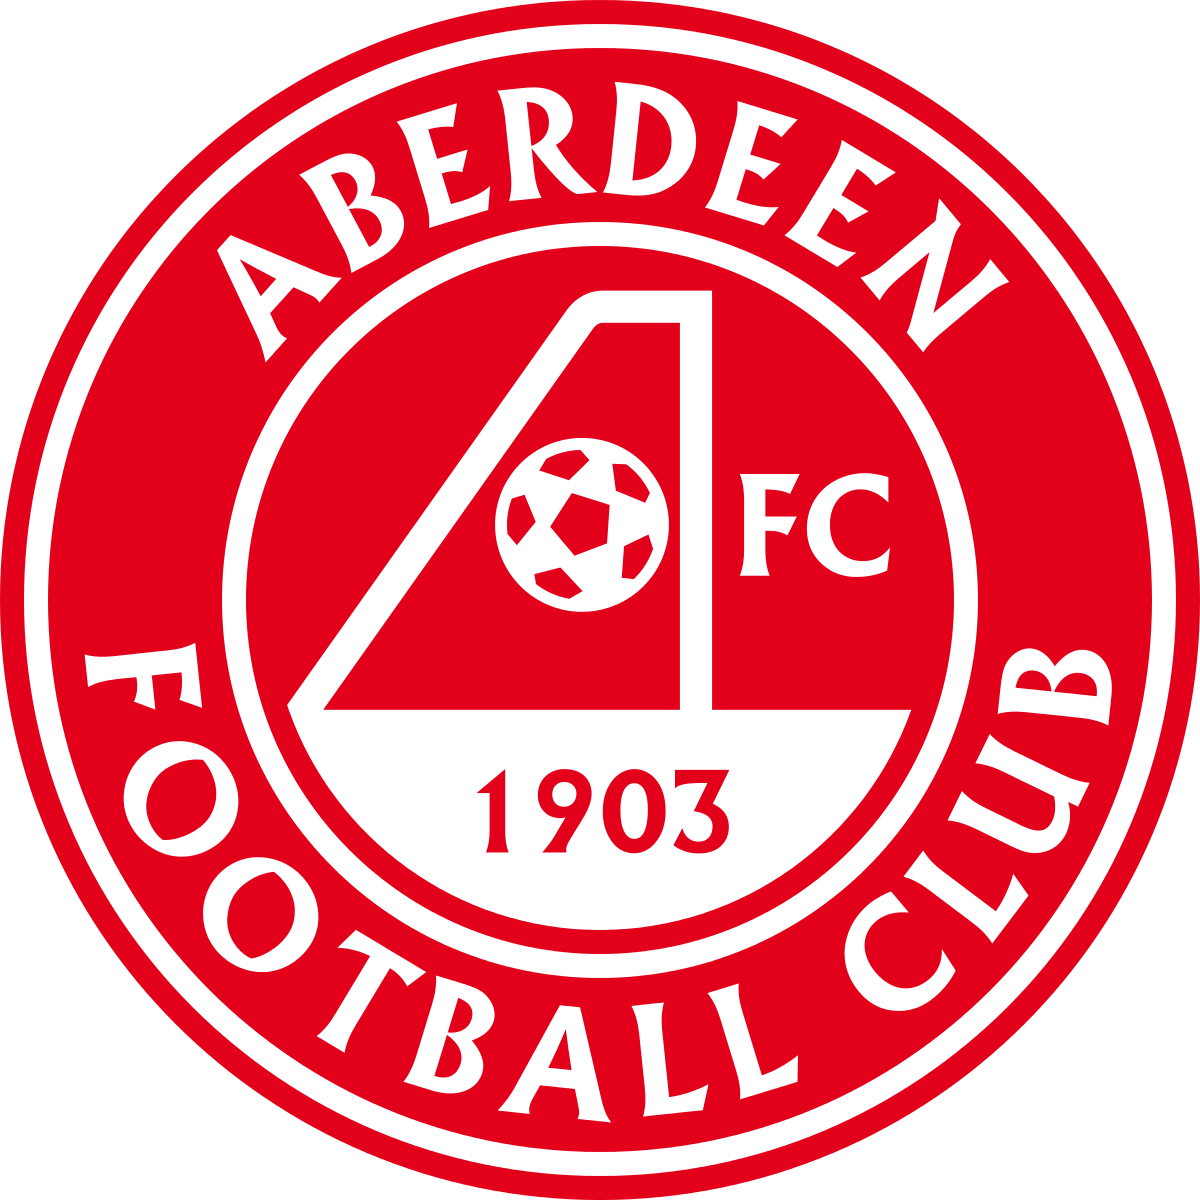 Programme TV Aberdeen FC